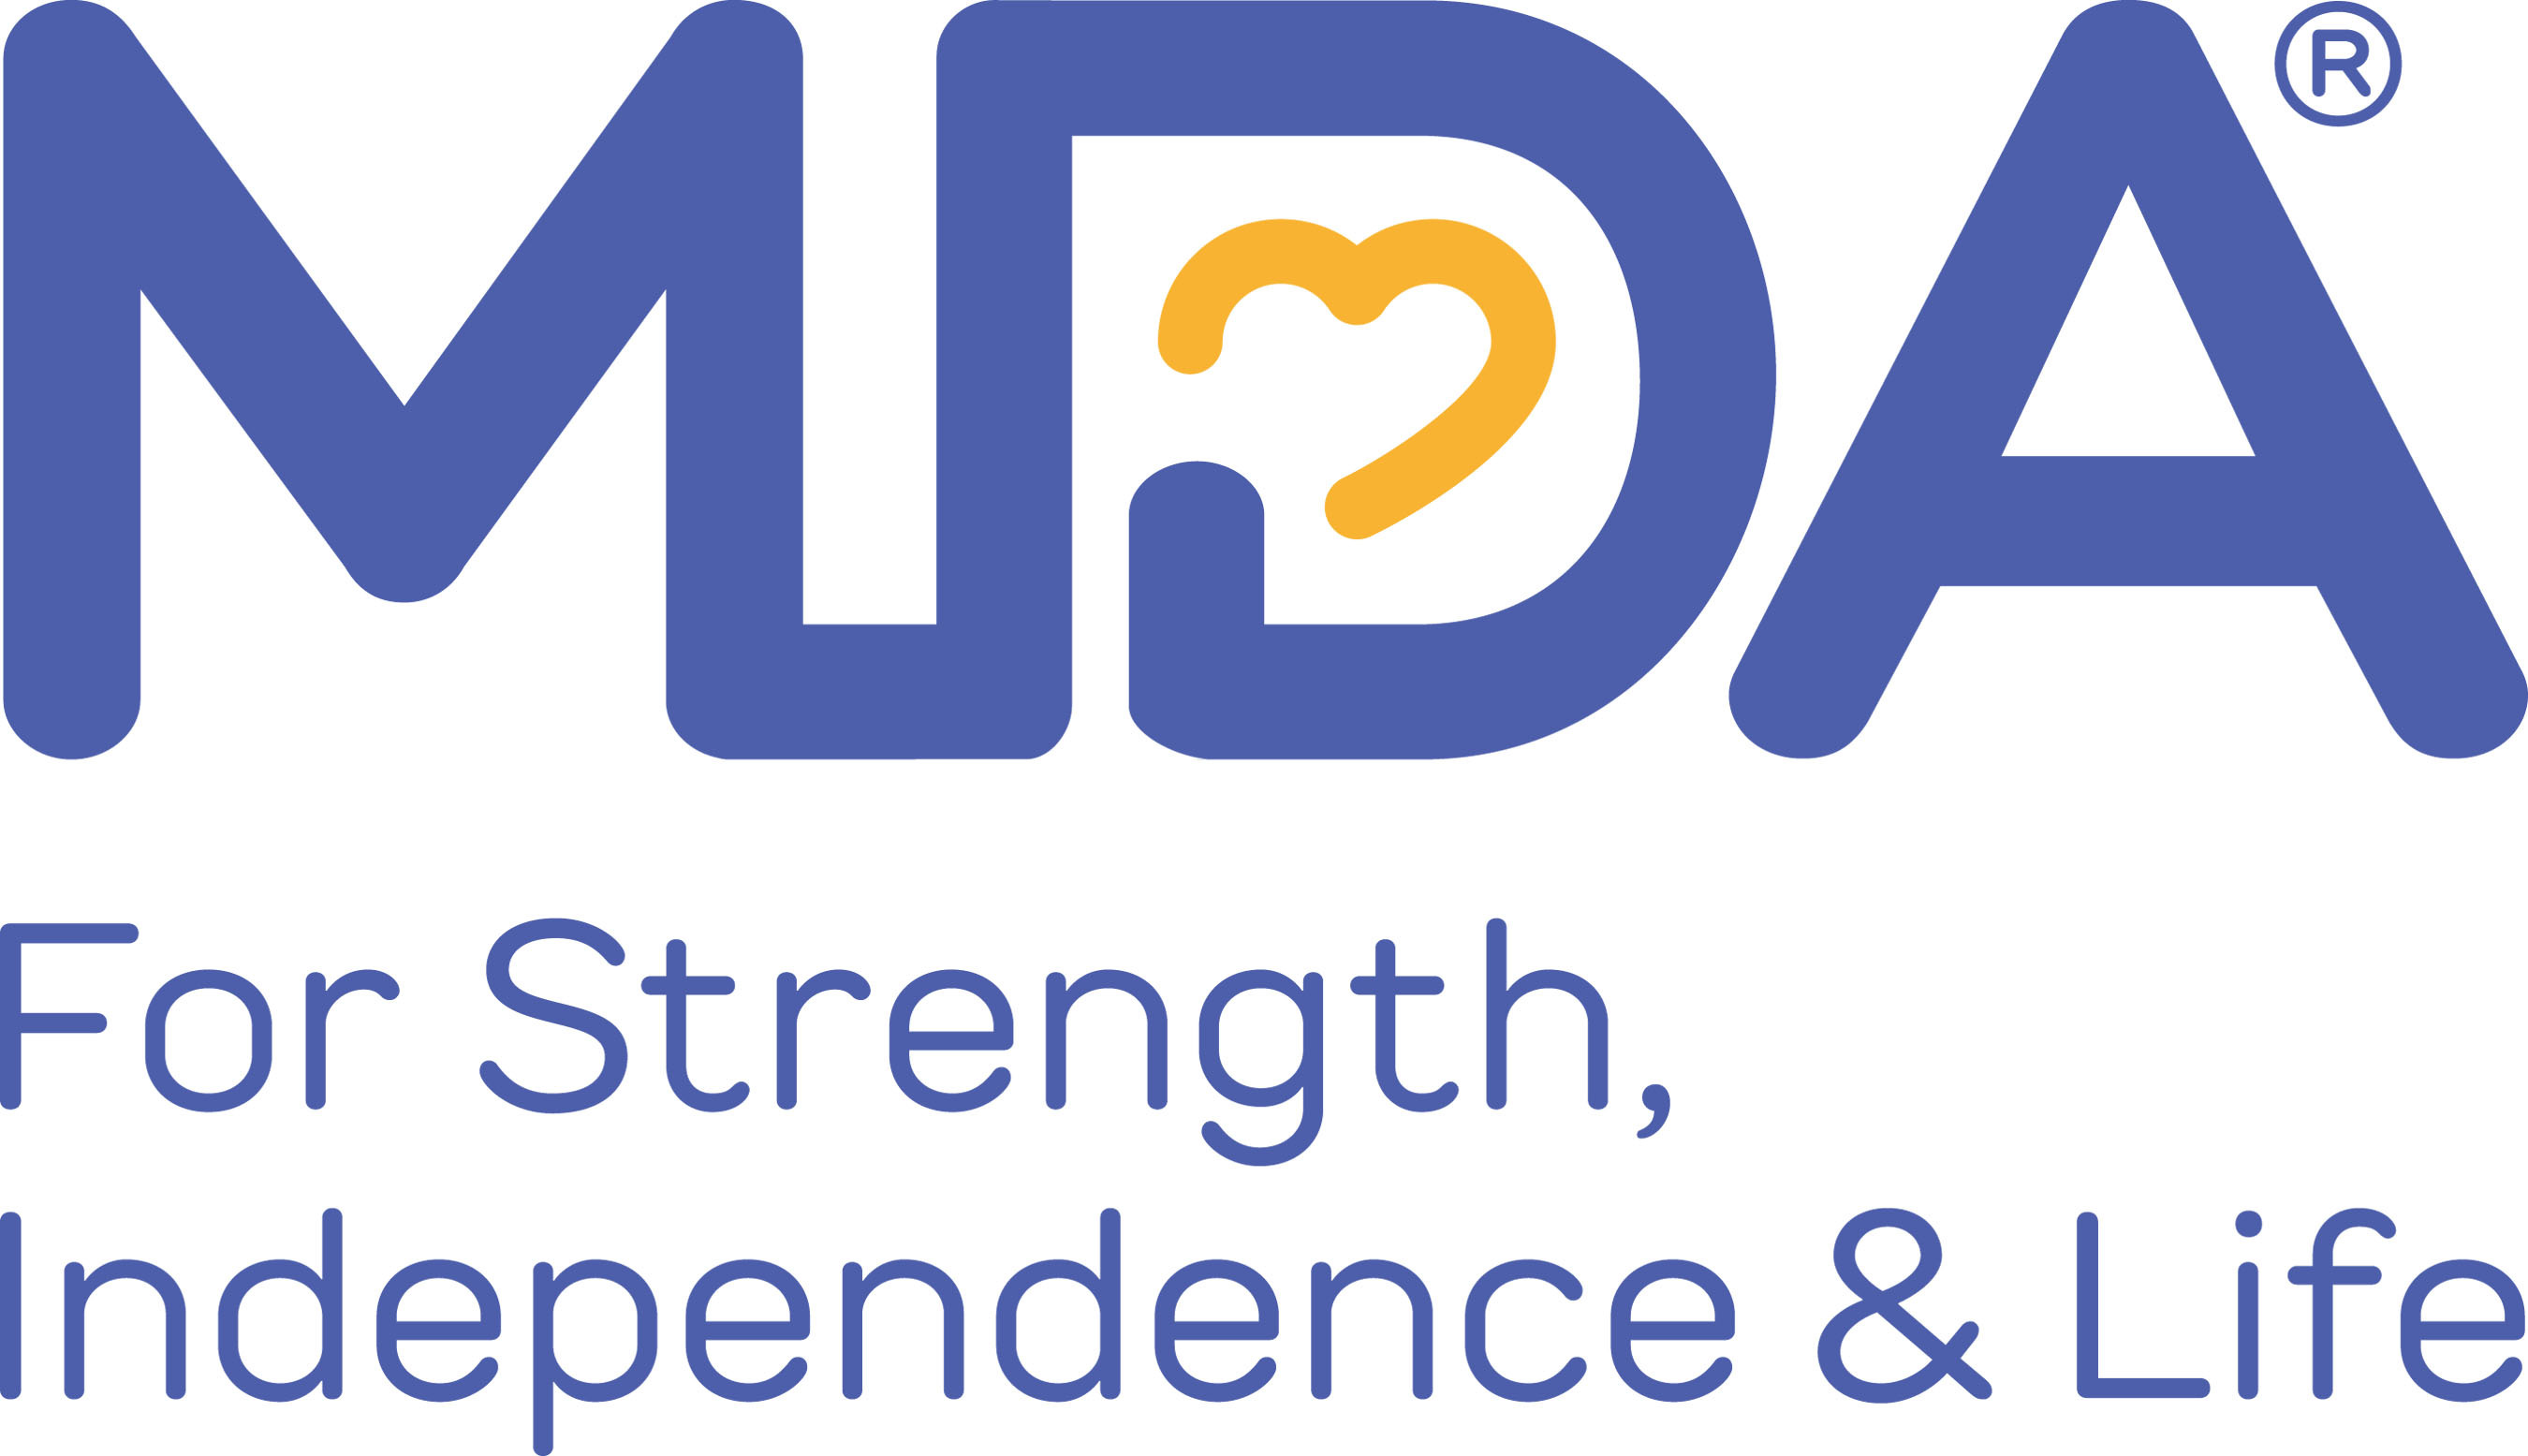 Muscular Dystrophy Association logo. (PRNewsFoto/Muscular Dystrophy Association) (PRNewsFoto/)